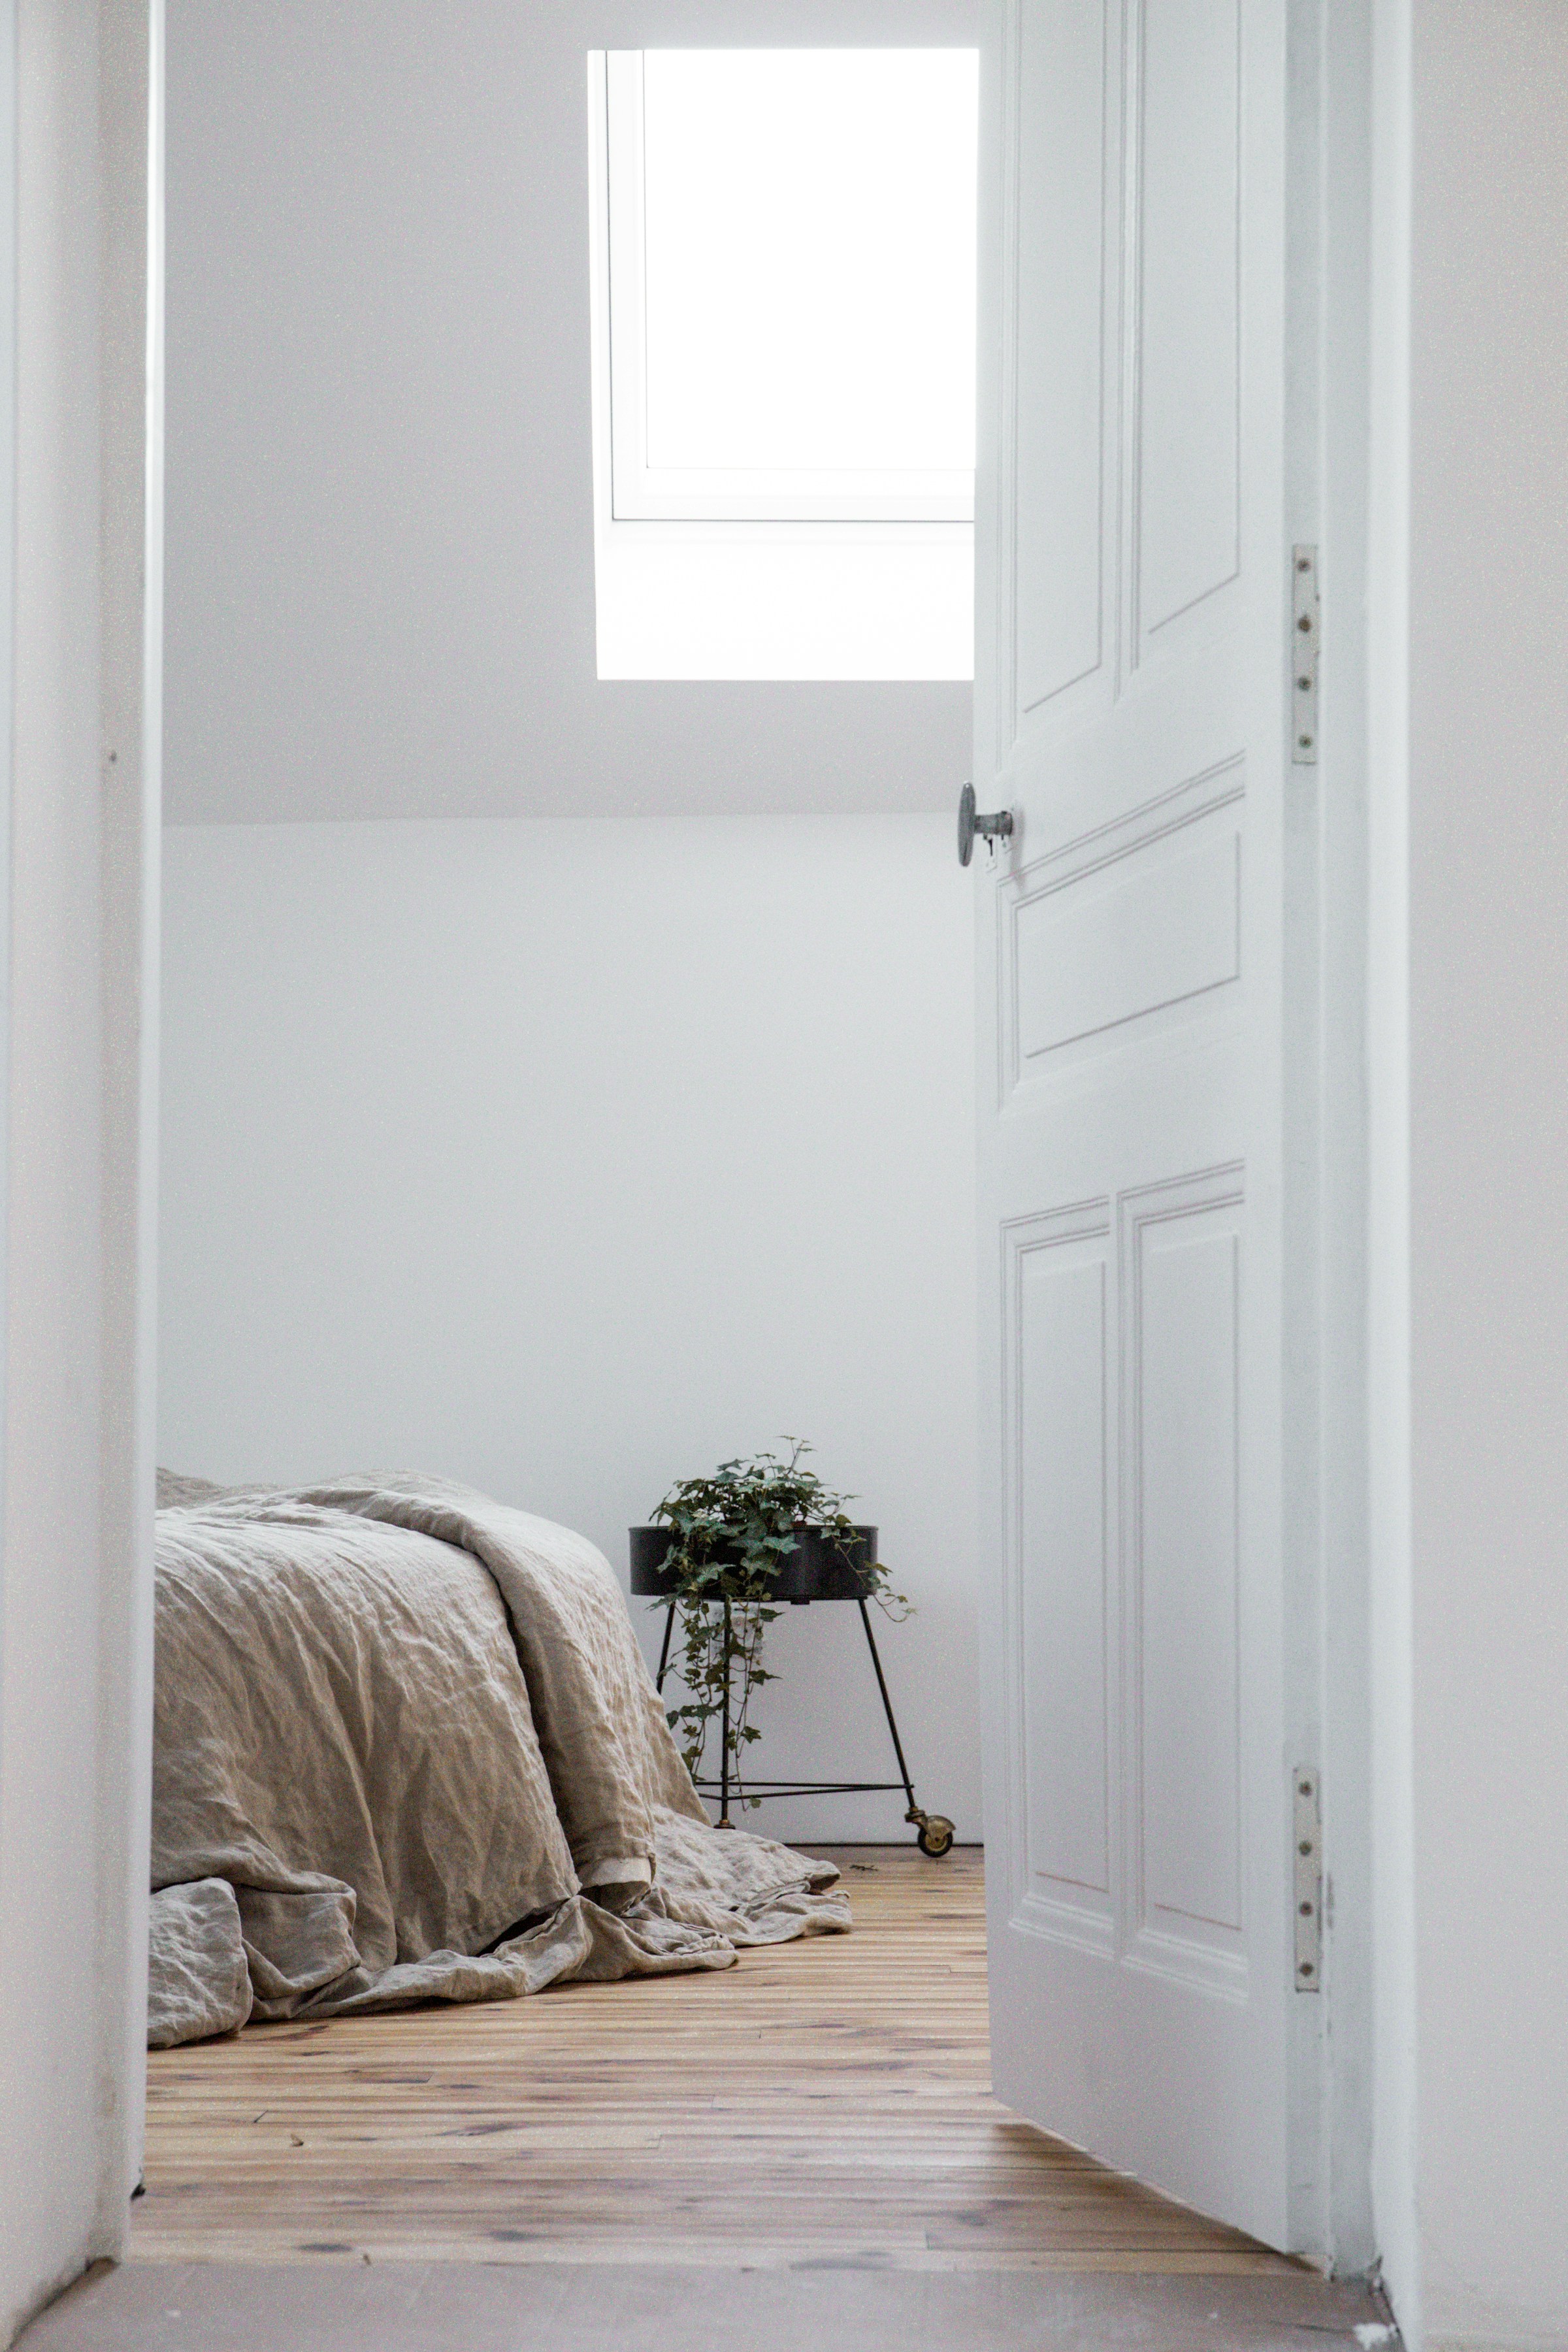 An opened bedroom door | Source: Unsplash